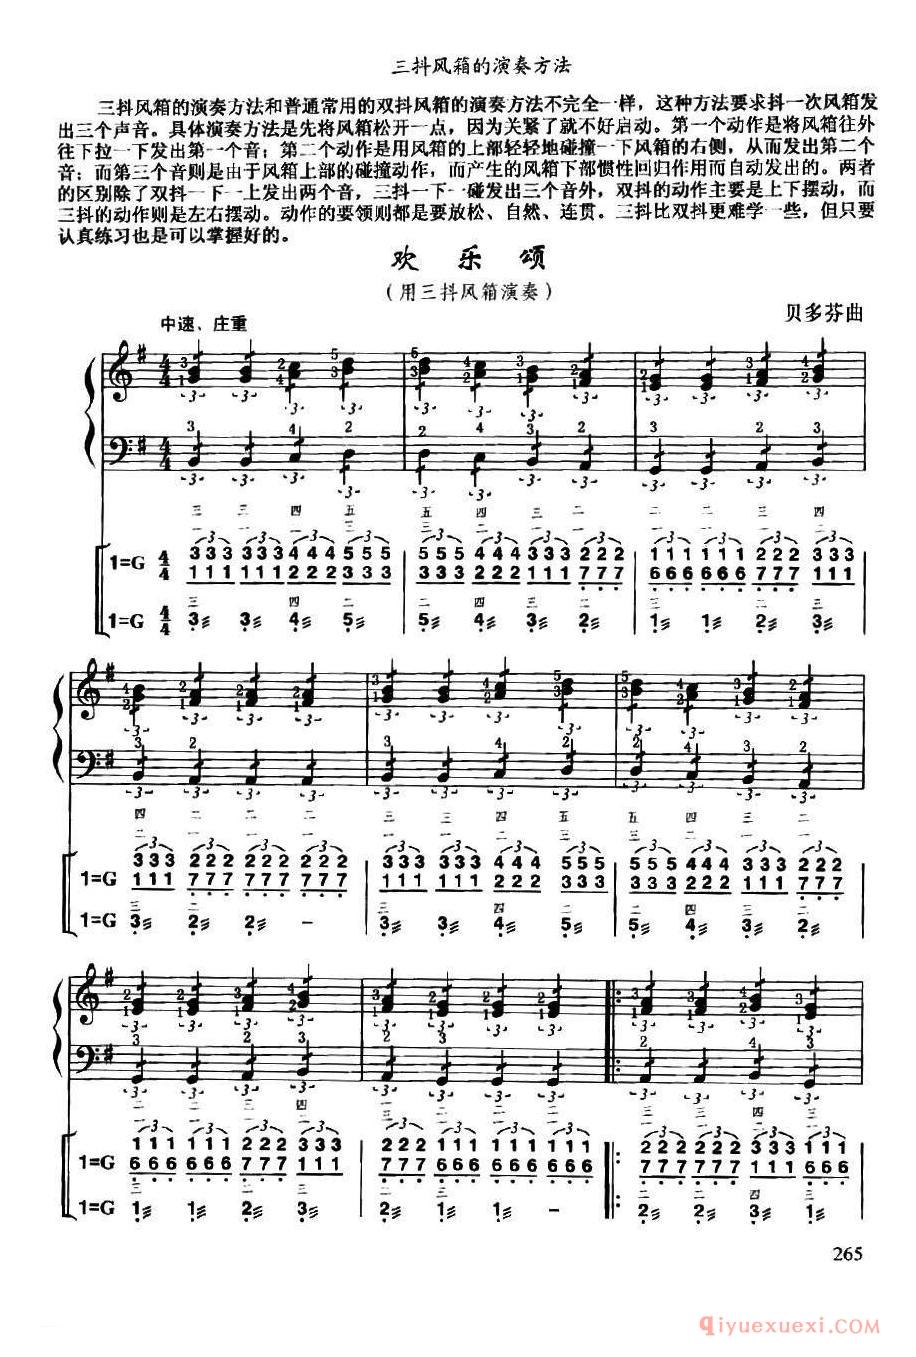 手风琴乐曲谱【欢乐颂】线简谱对照、带指法版